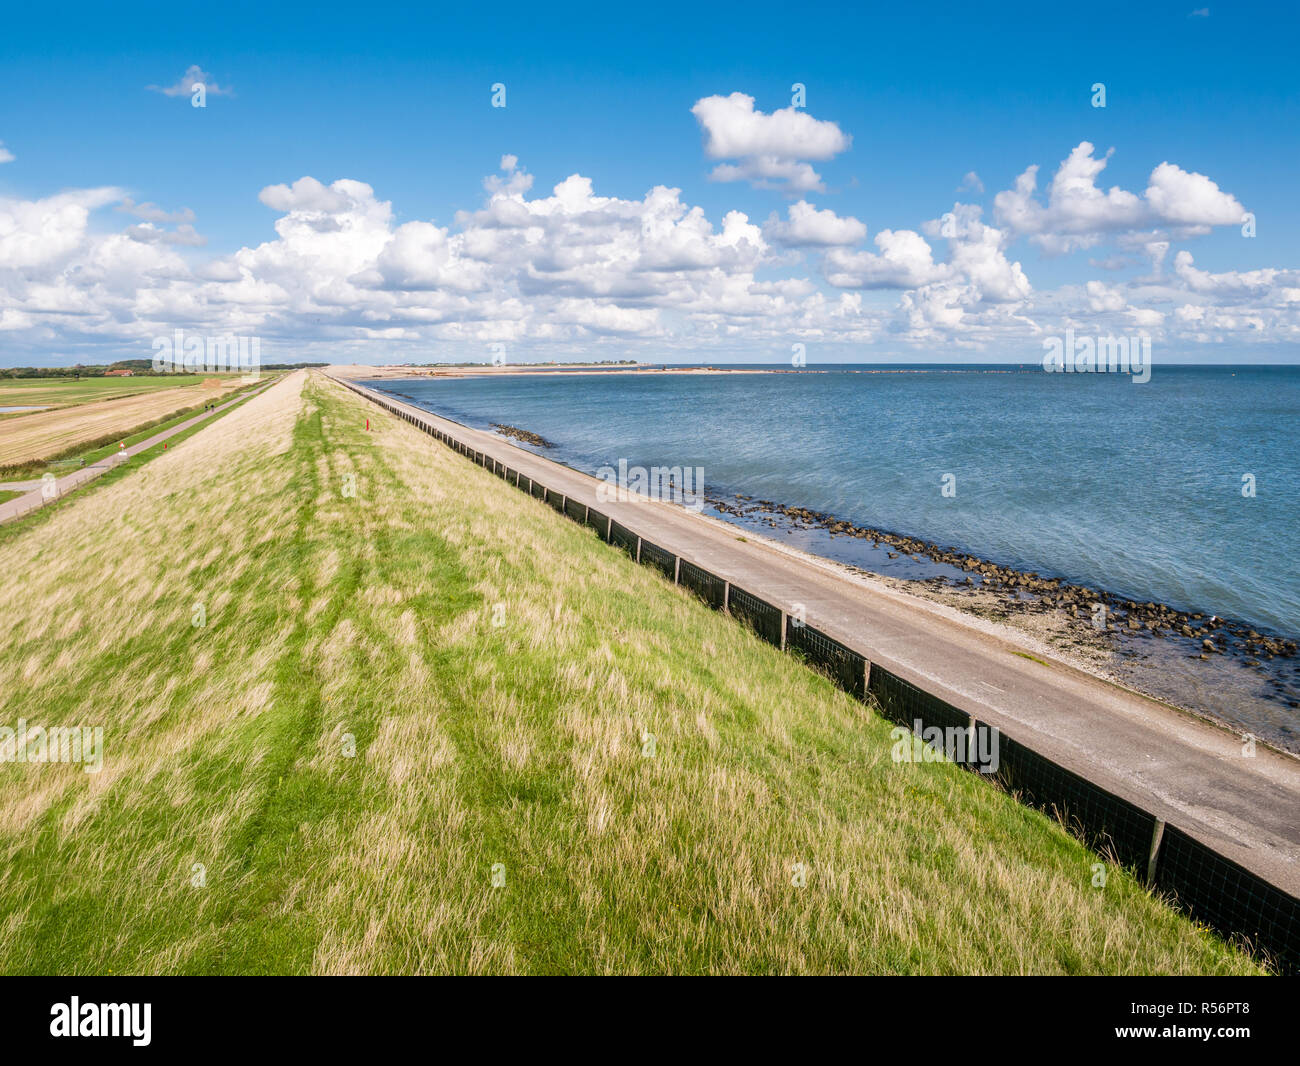 Dyke avec la protection de l'herbe sur l'île de Frise occidentale polders contre mer des Wadden Texel, Pays-Bas Banque D'Images